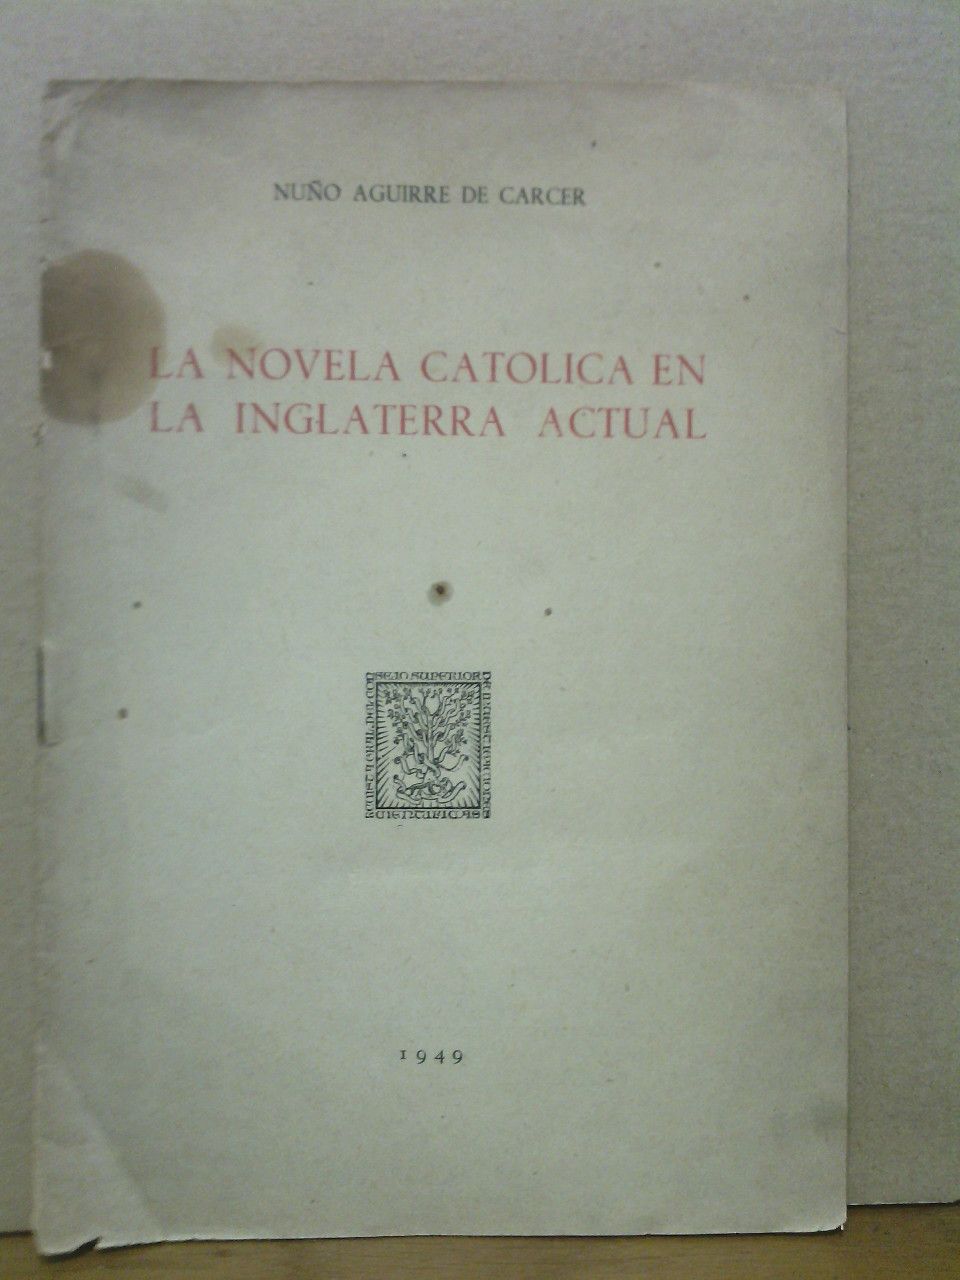 AGUIRRE DE CARCER, Nuo - La novela catlica en la Inglaterra actual